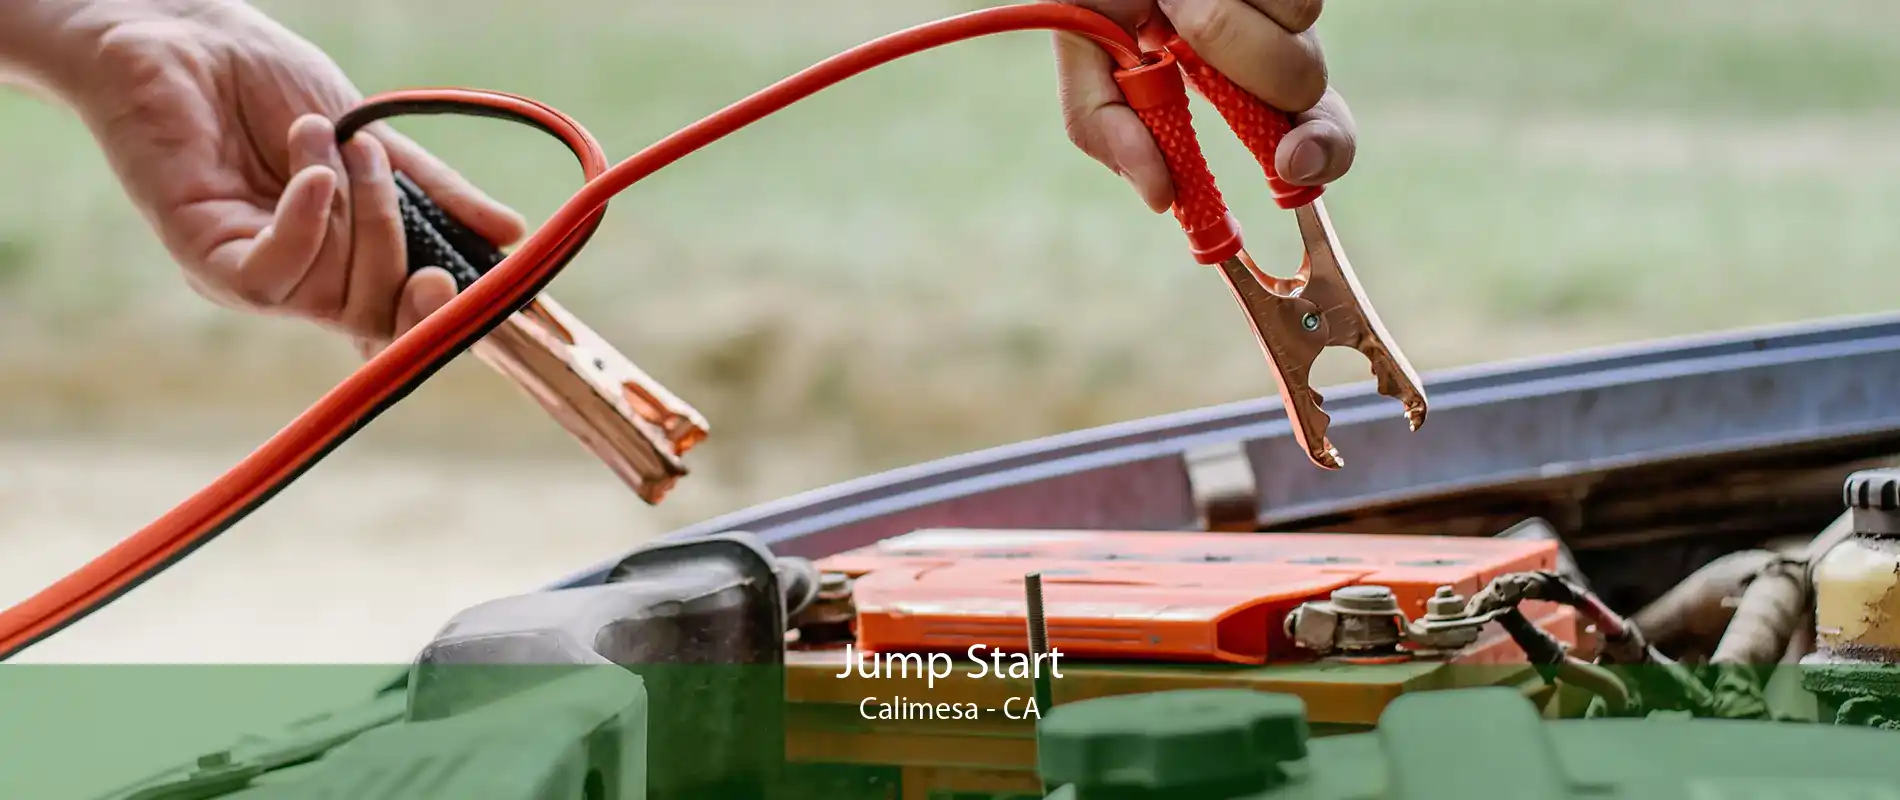 Jump Start Calimesa - CA